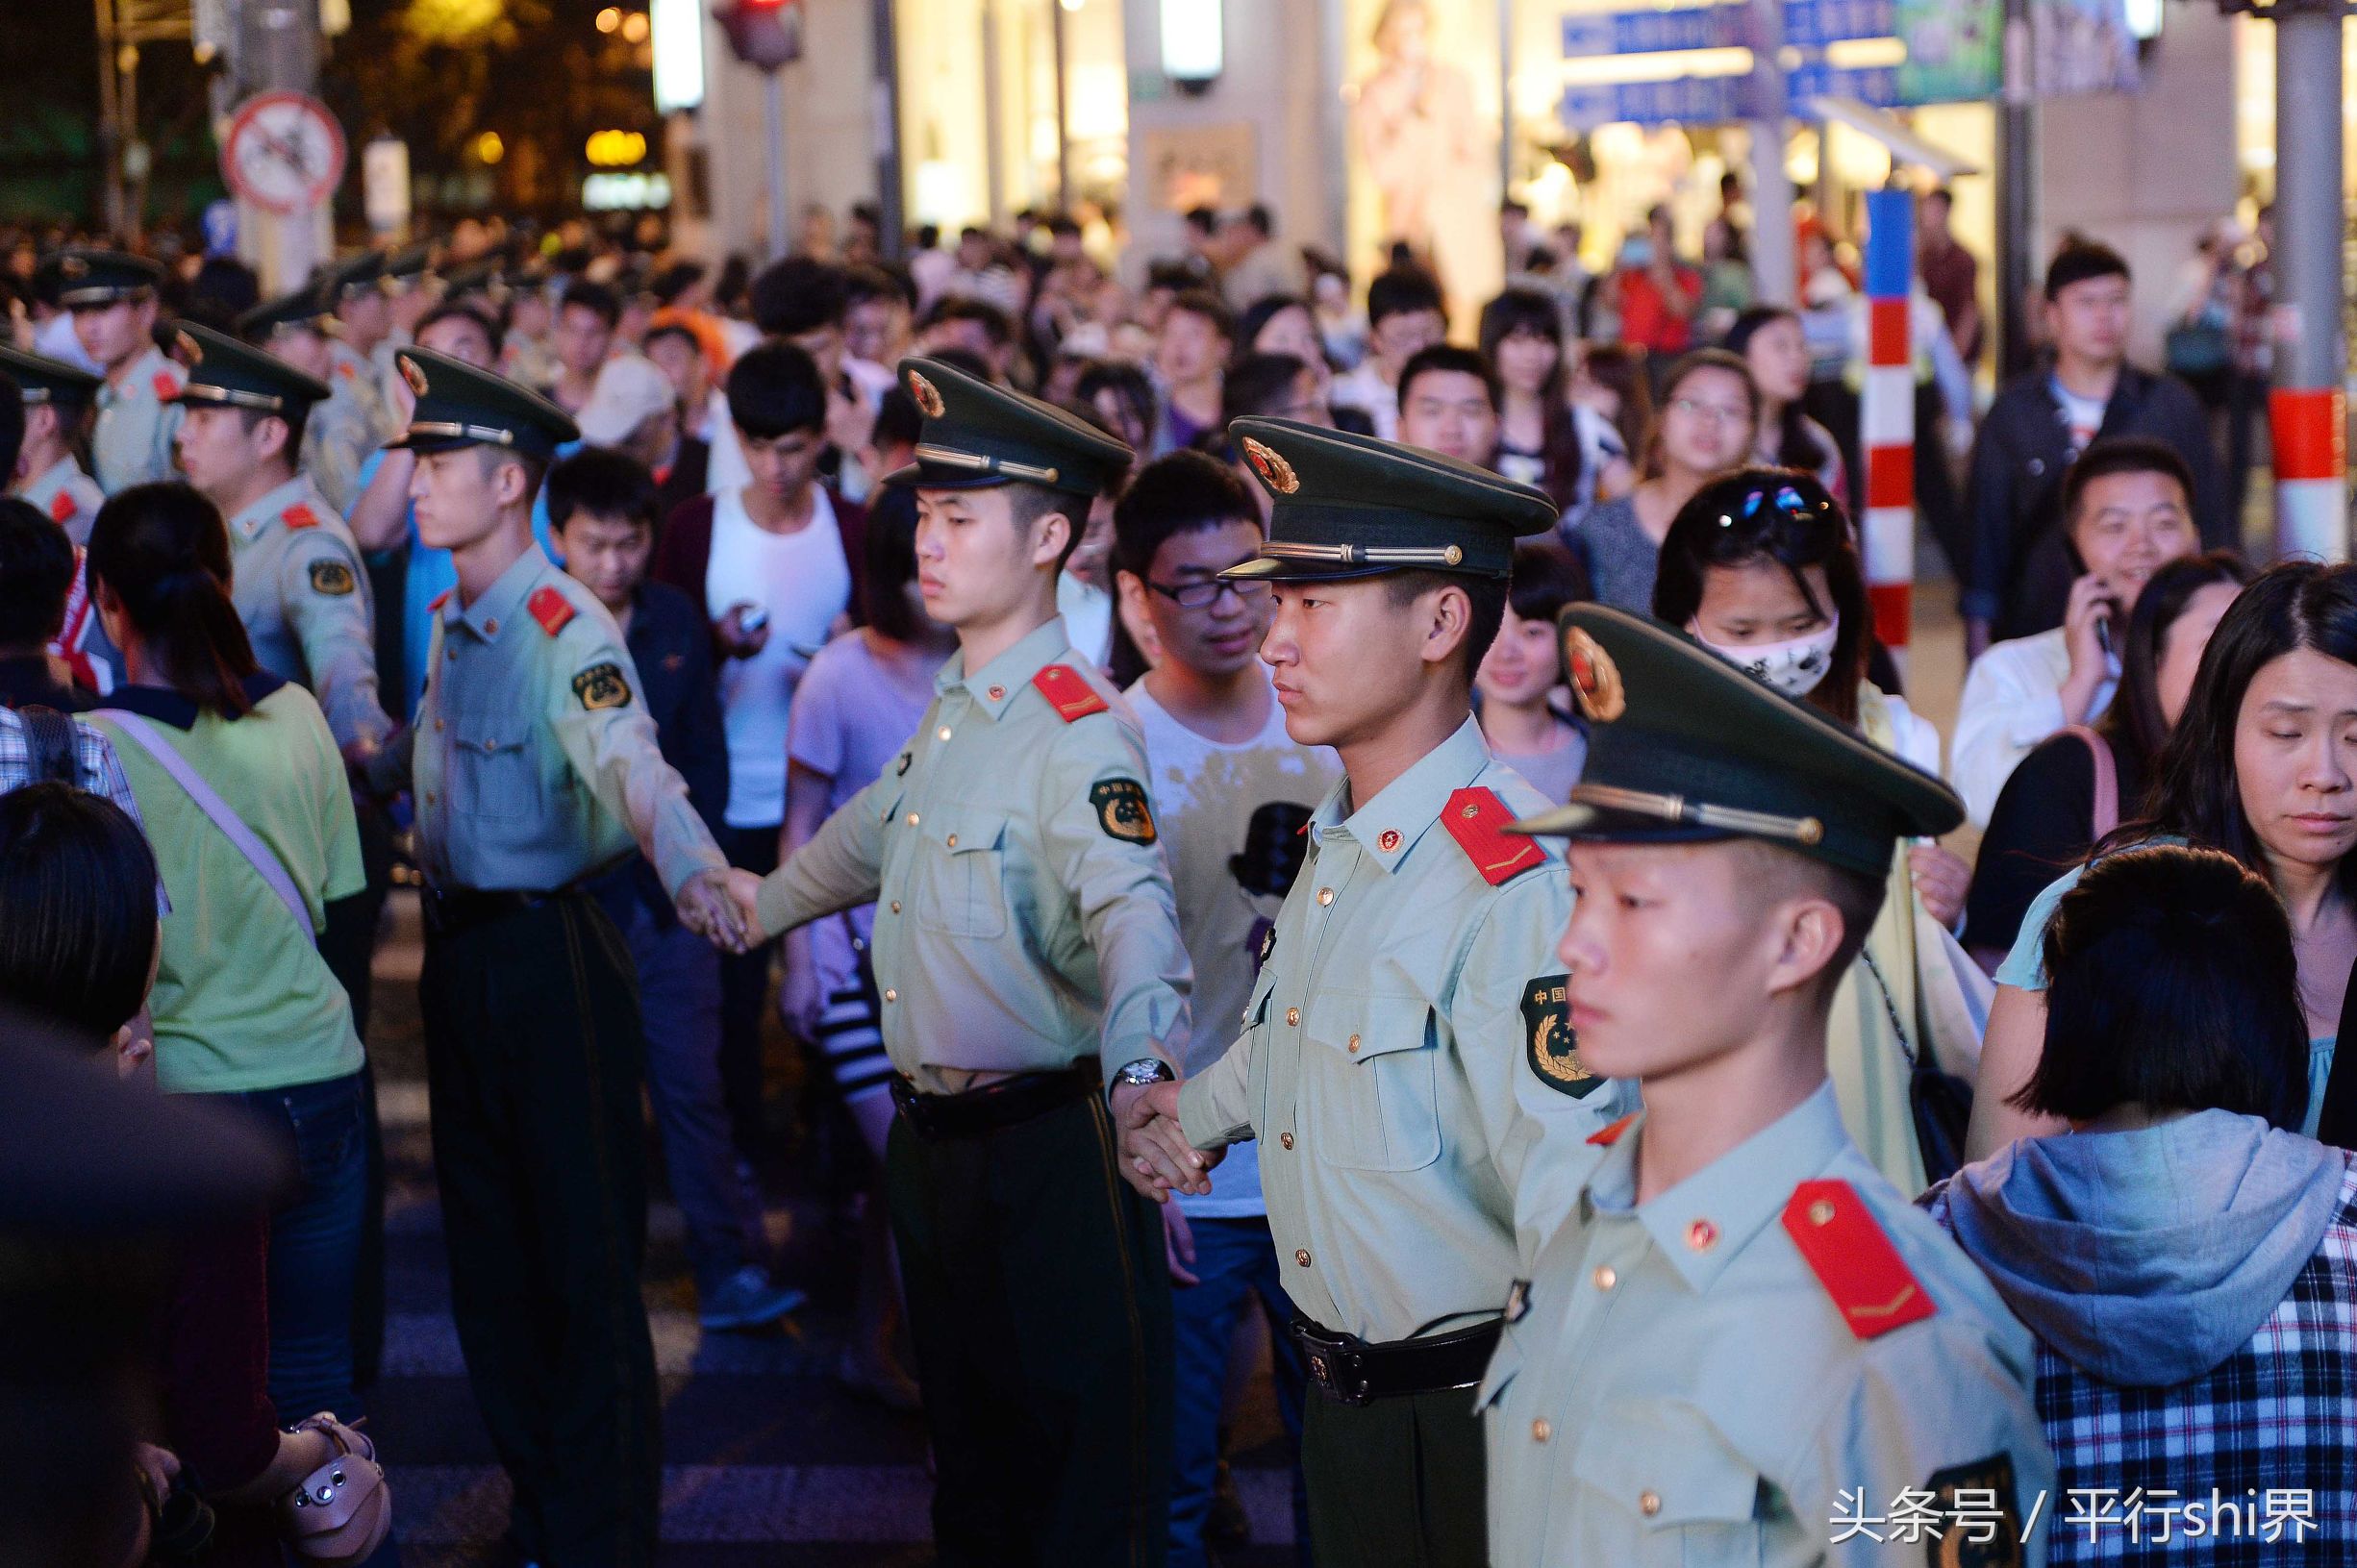 上海南京路步行街上的武警战士组成的人墙,分流大客流.